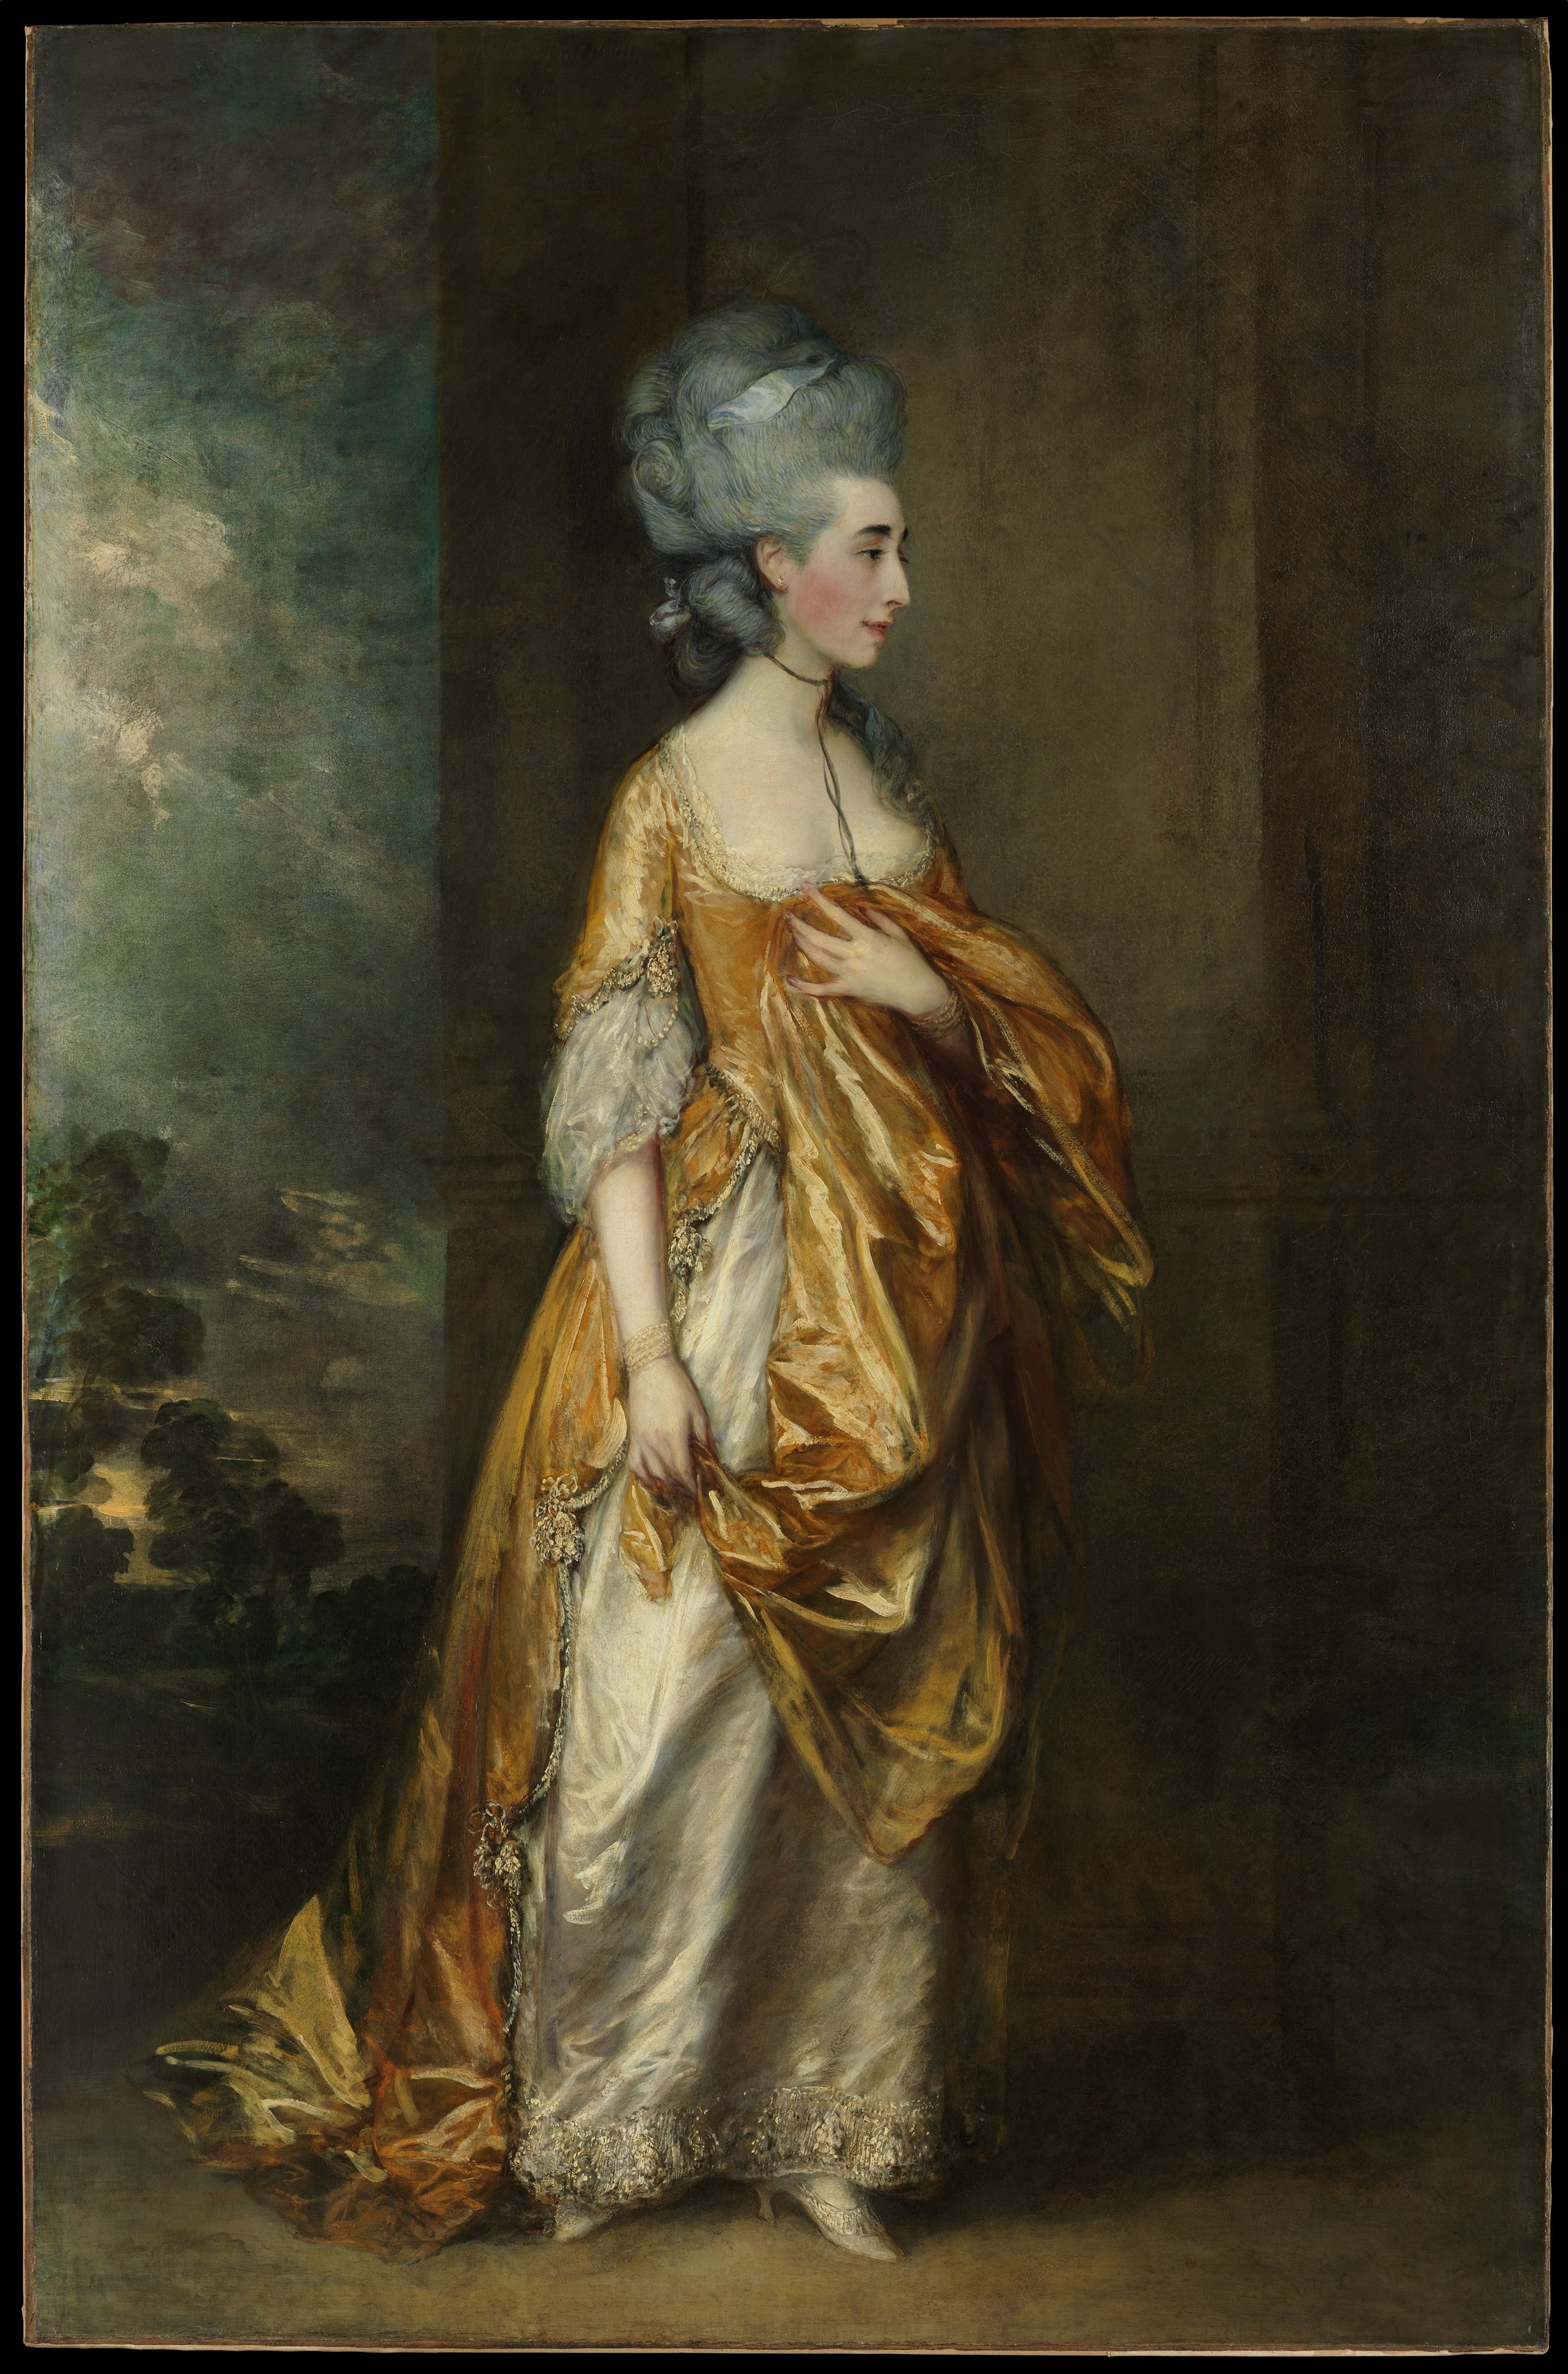 格蕾丝·达尔林普·艾略特女士 by 托马斯 庚斯博罗 - 1778 - 234.3 x 153.7cm 